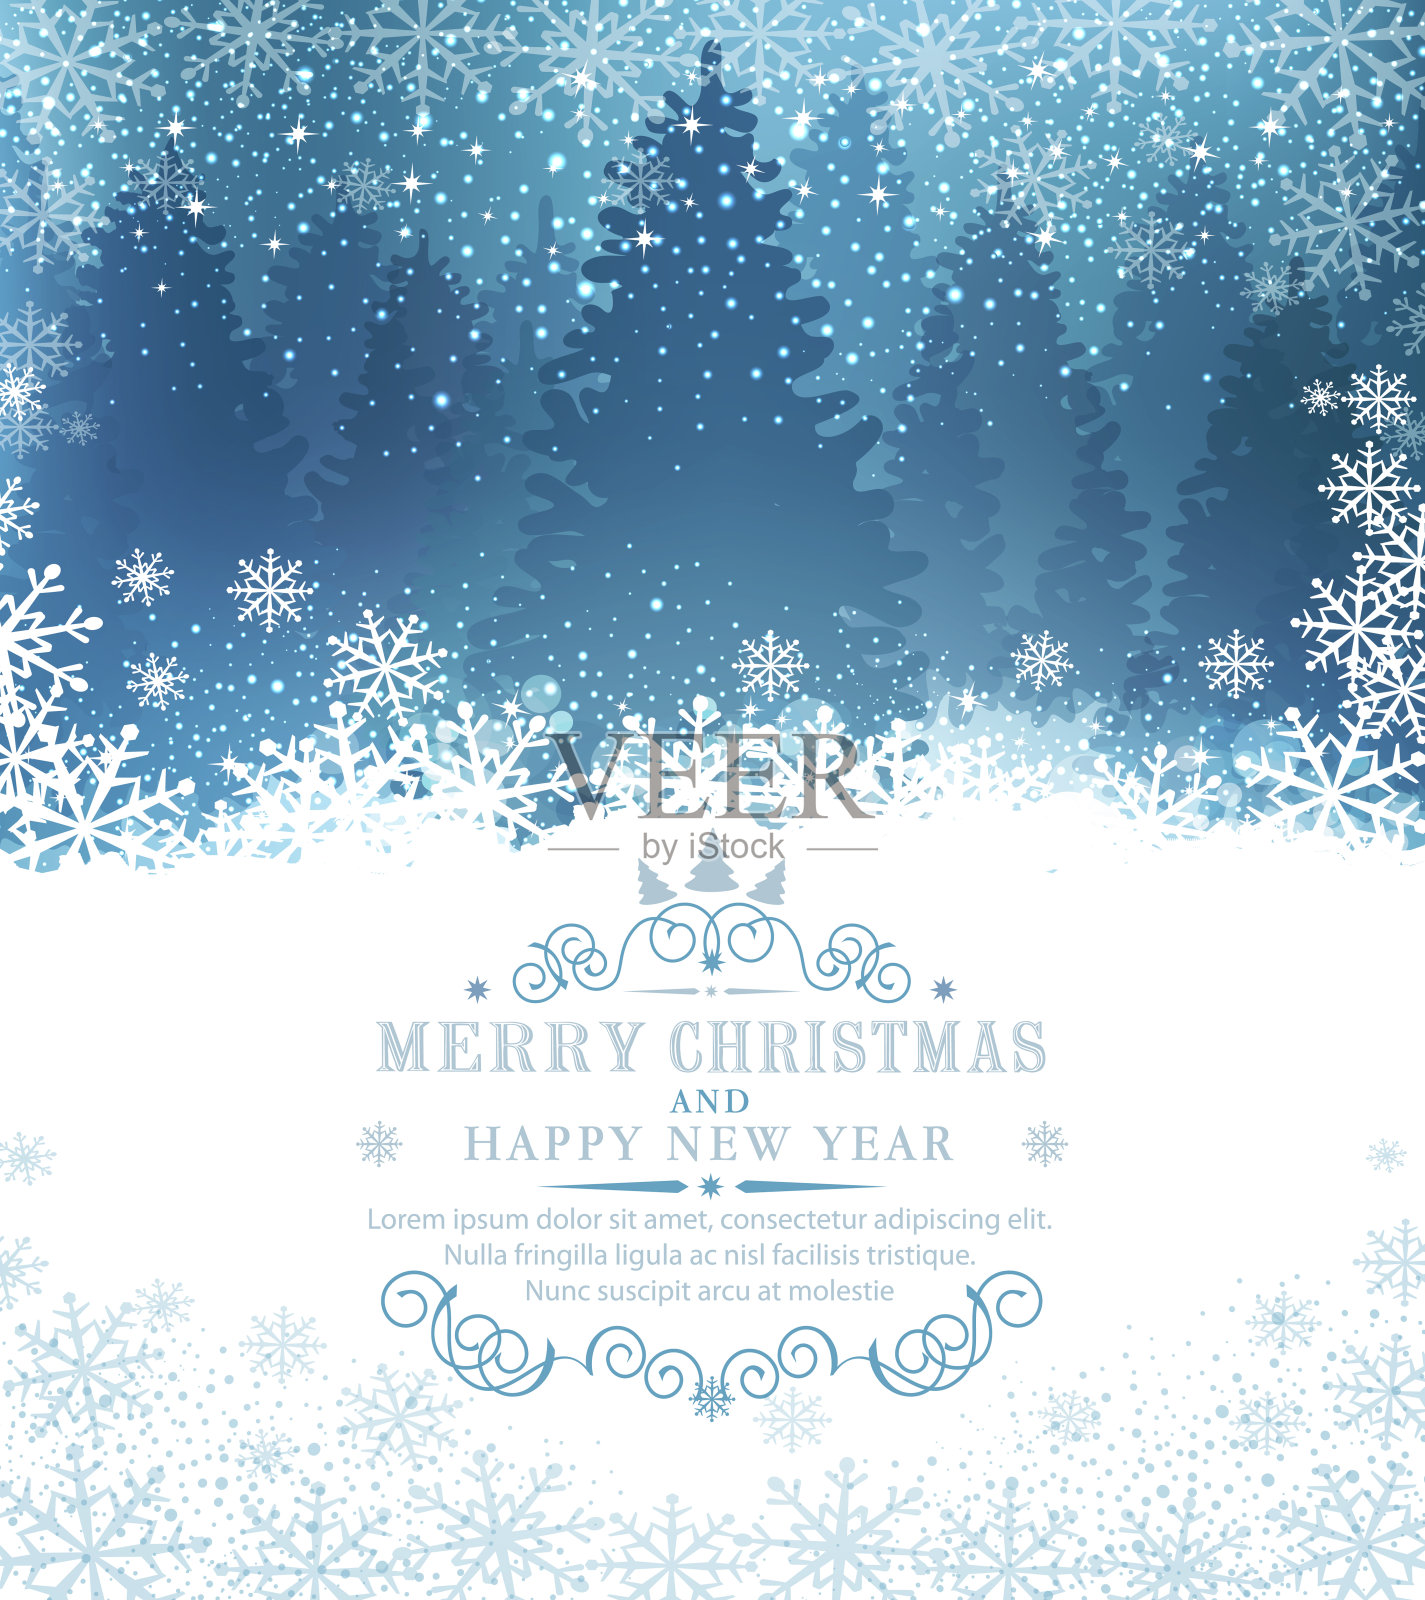 矢量插图圣诞快乐和新年快乐。贺卡与雪和雪花的背景下白雪覆盖的森林和云杉。为明信片，传单，祝贺小册子的优雅设计模板插画图片素材